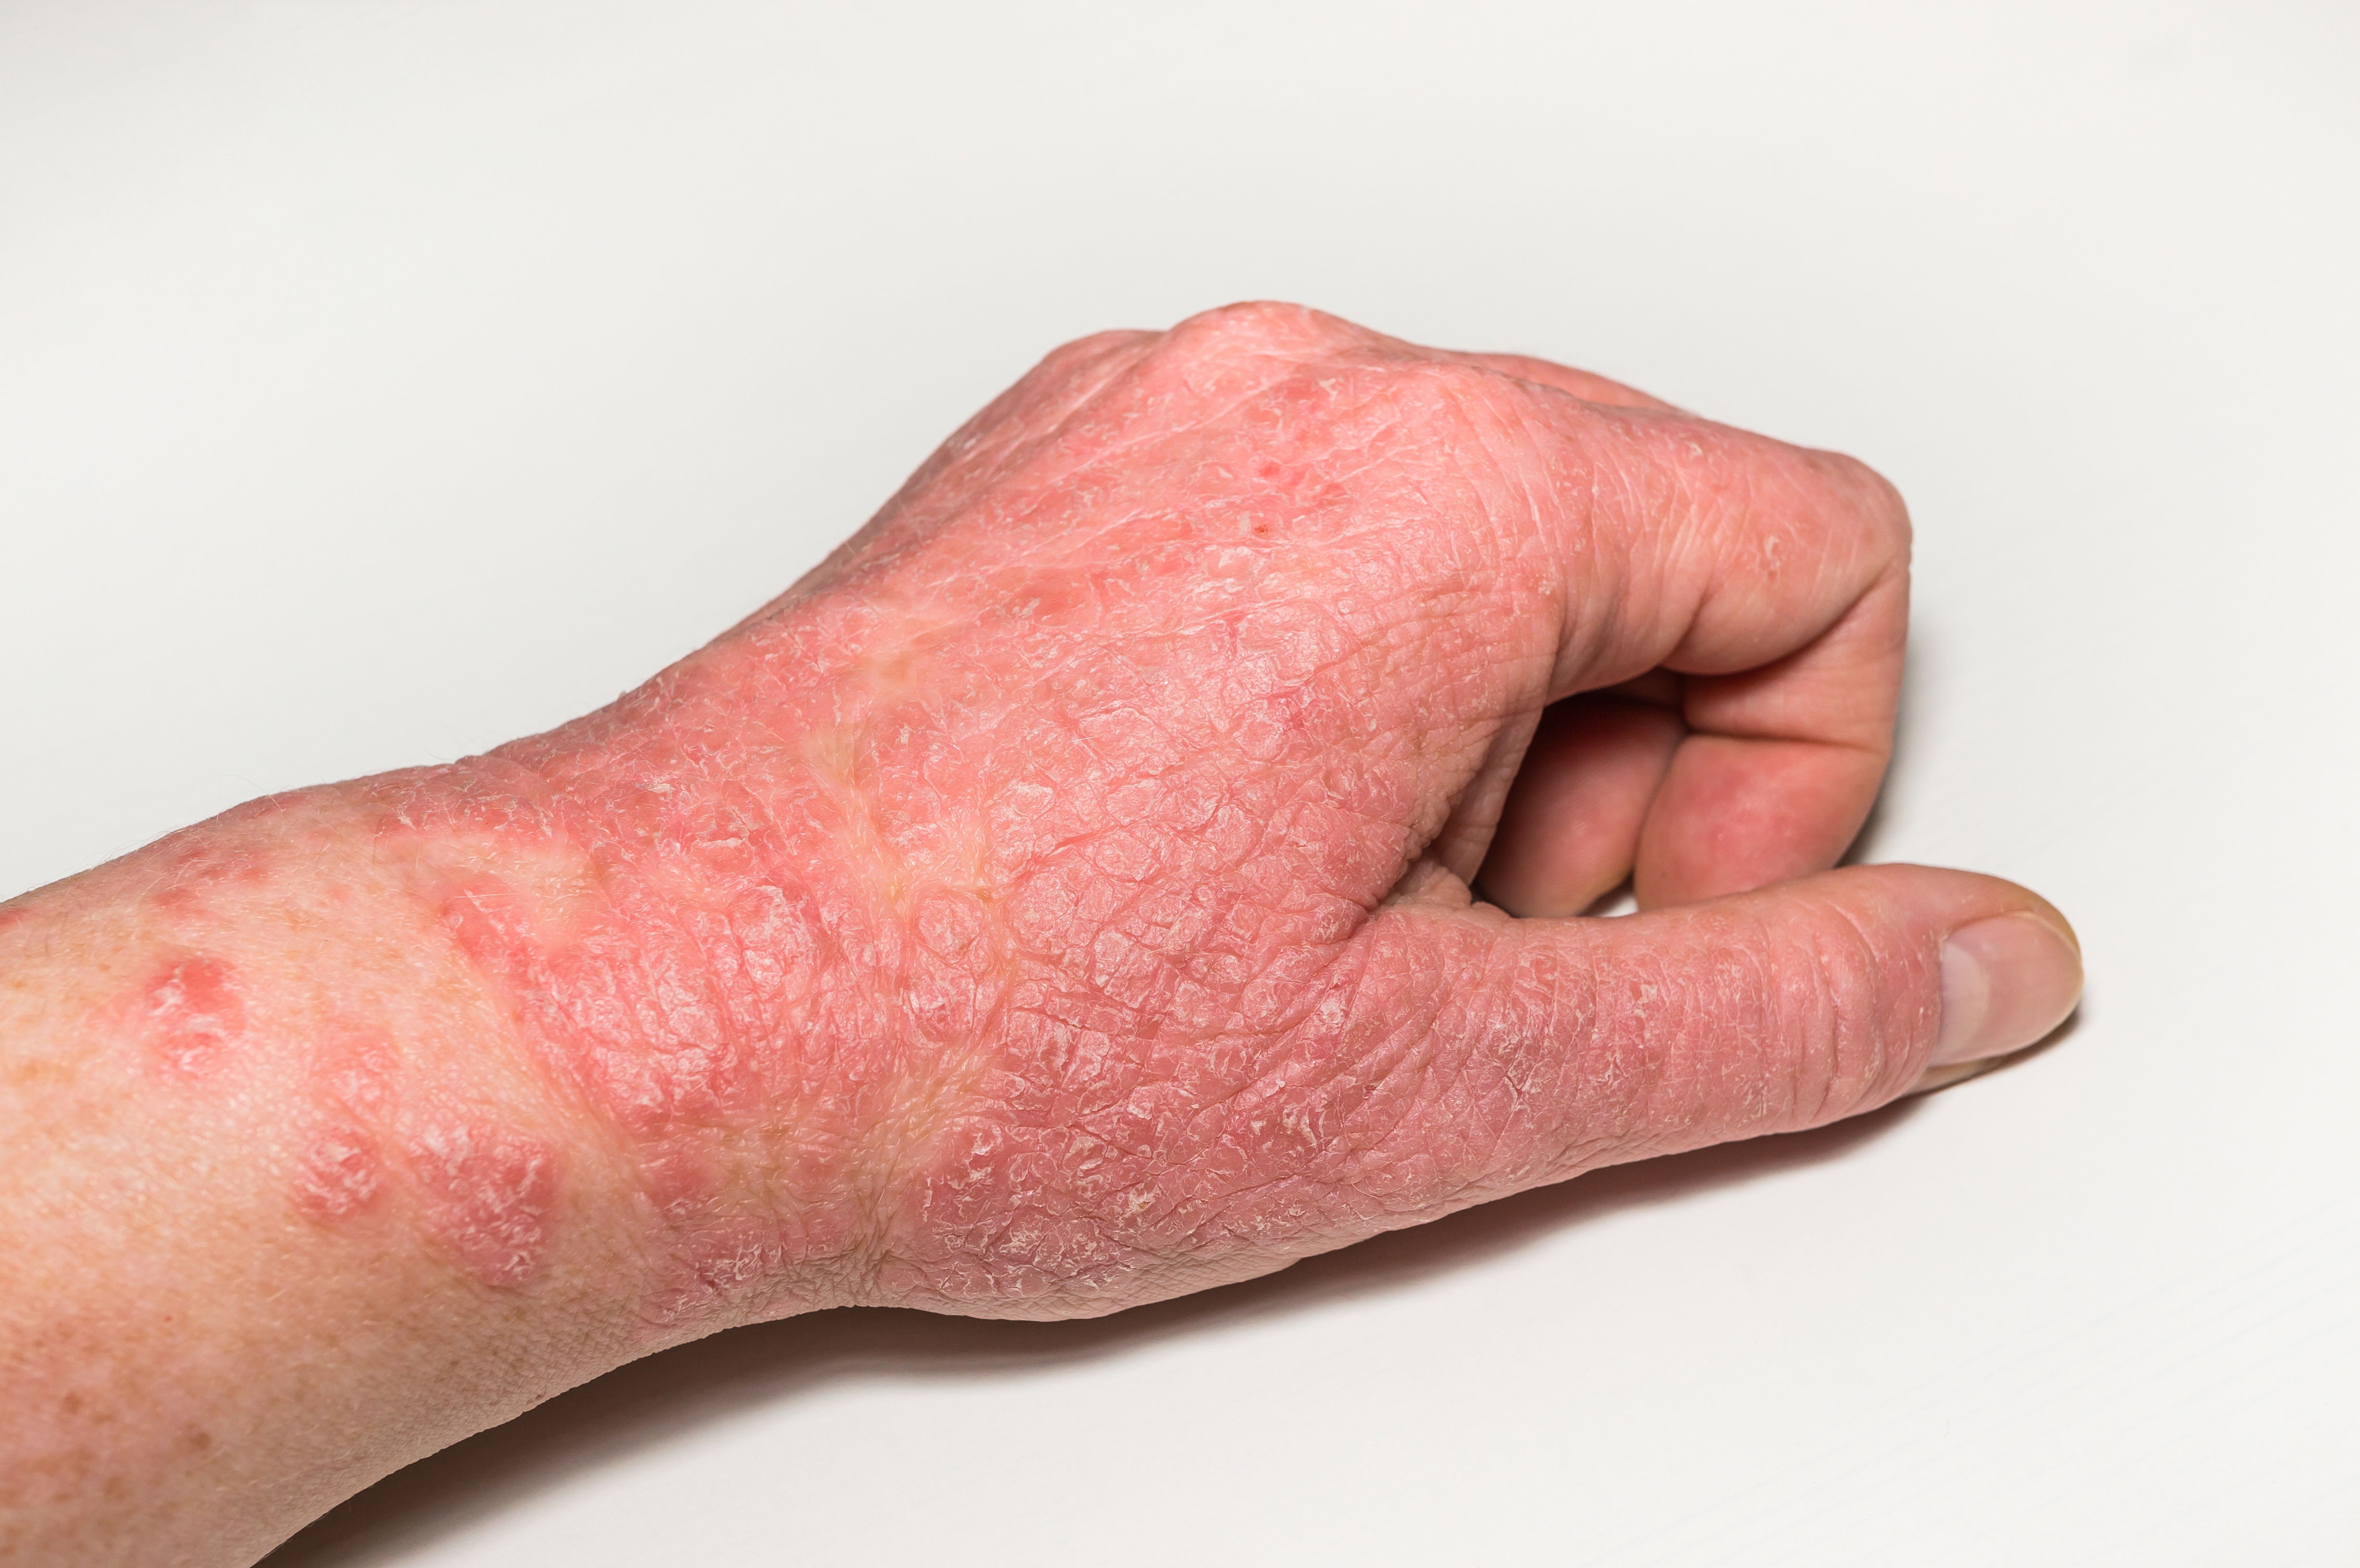 Nahaufnahme einer Hand mit Neurodermitis Symptomen wie Lichenifikation (Vergröberung der Haut), Rötungen und Ekzemen